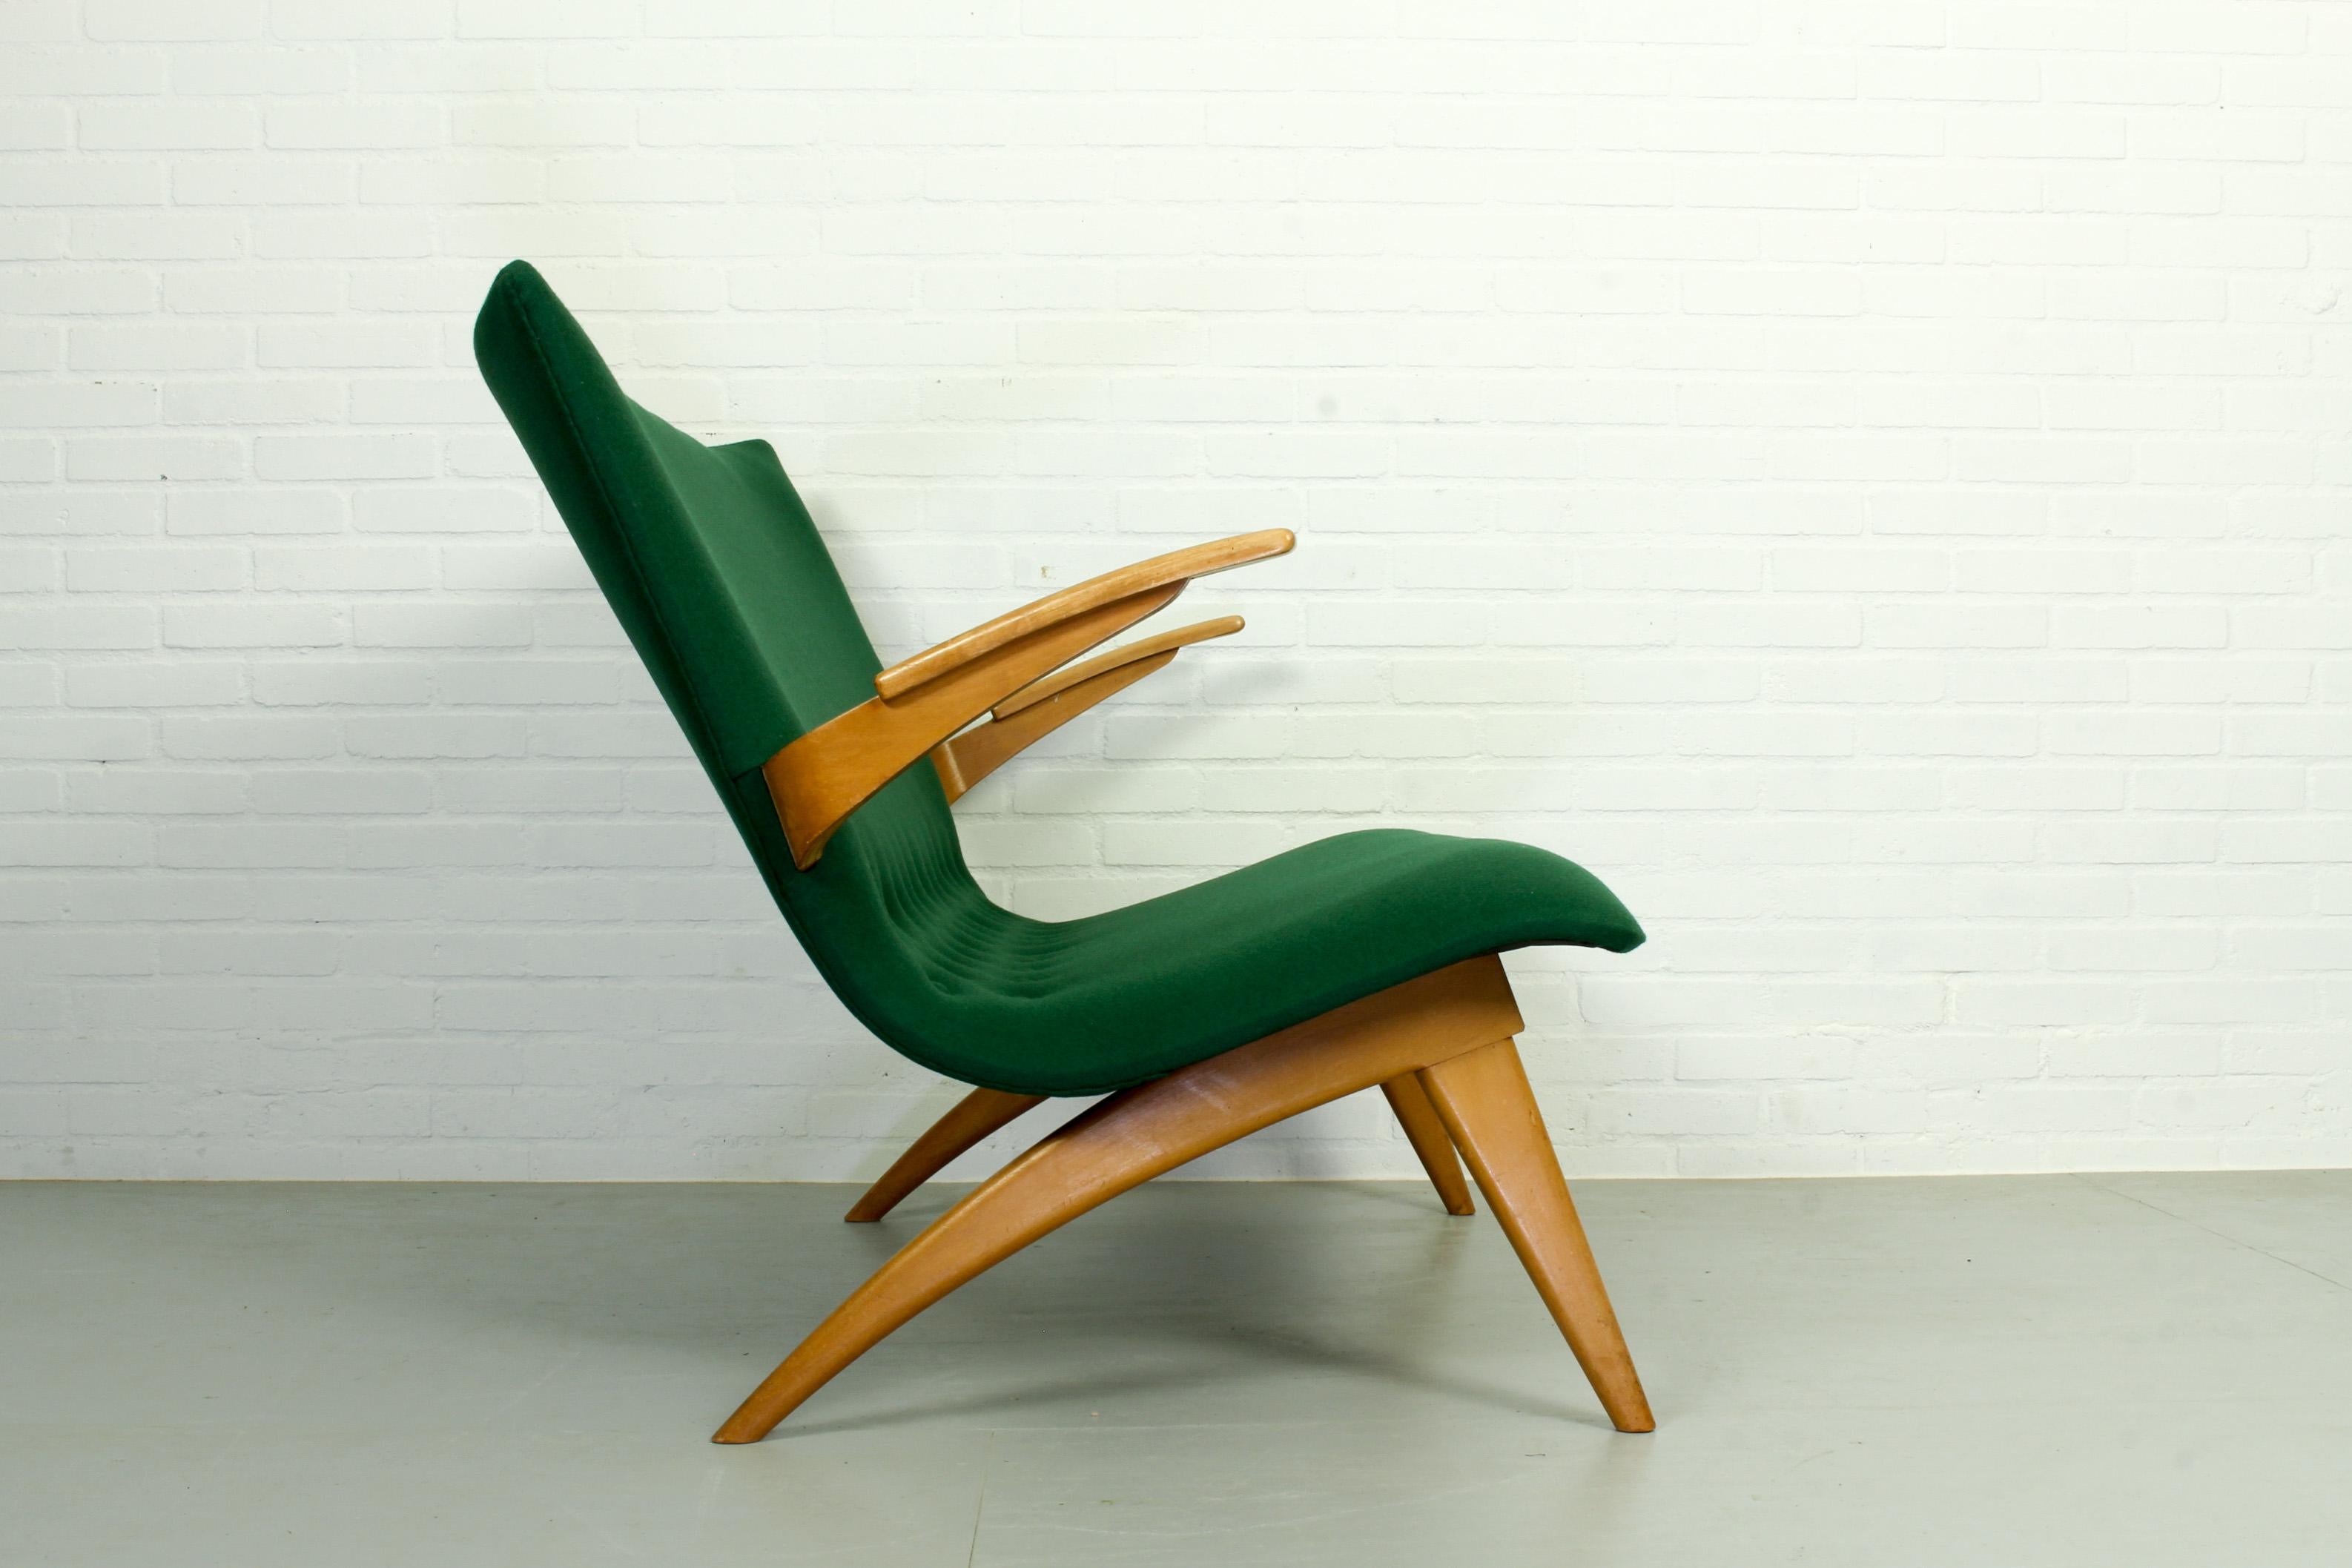 Ein seltenes und formschönes Loungesofa von van Os Culemborg aus den Niederlanden. Entworfen von G. van Os in den 1950er Jahren. Dieses Sofa hat schön geformte Armlehnen und einen schön geschwungenen Rahmen. Das Sofa hat neuen Schaumstoff und neuen